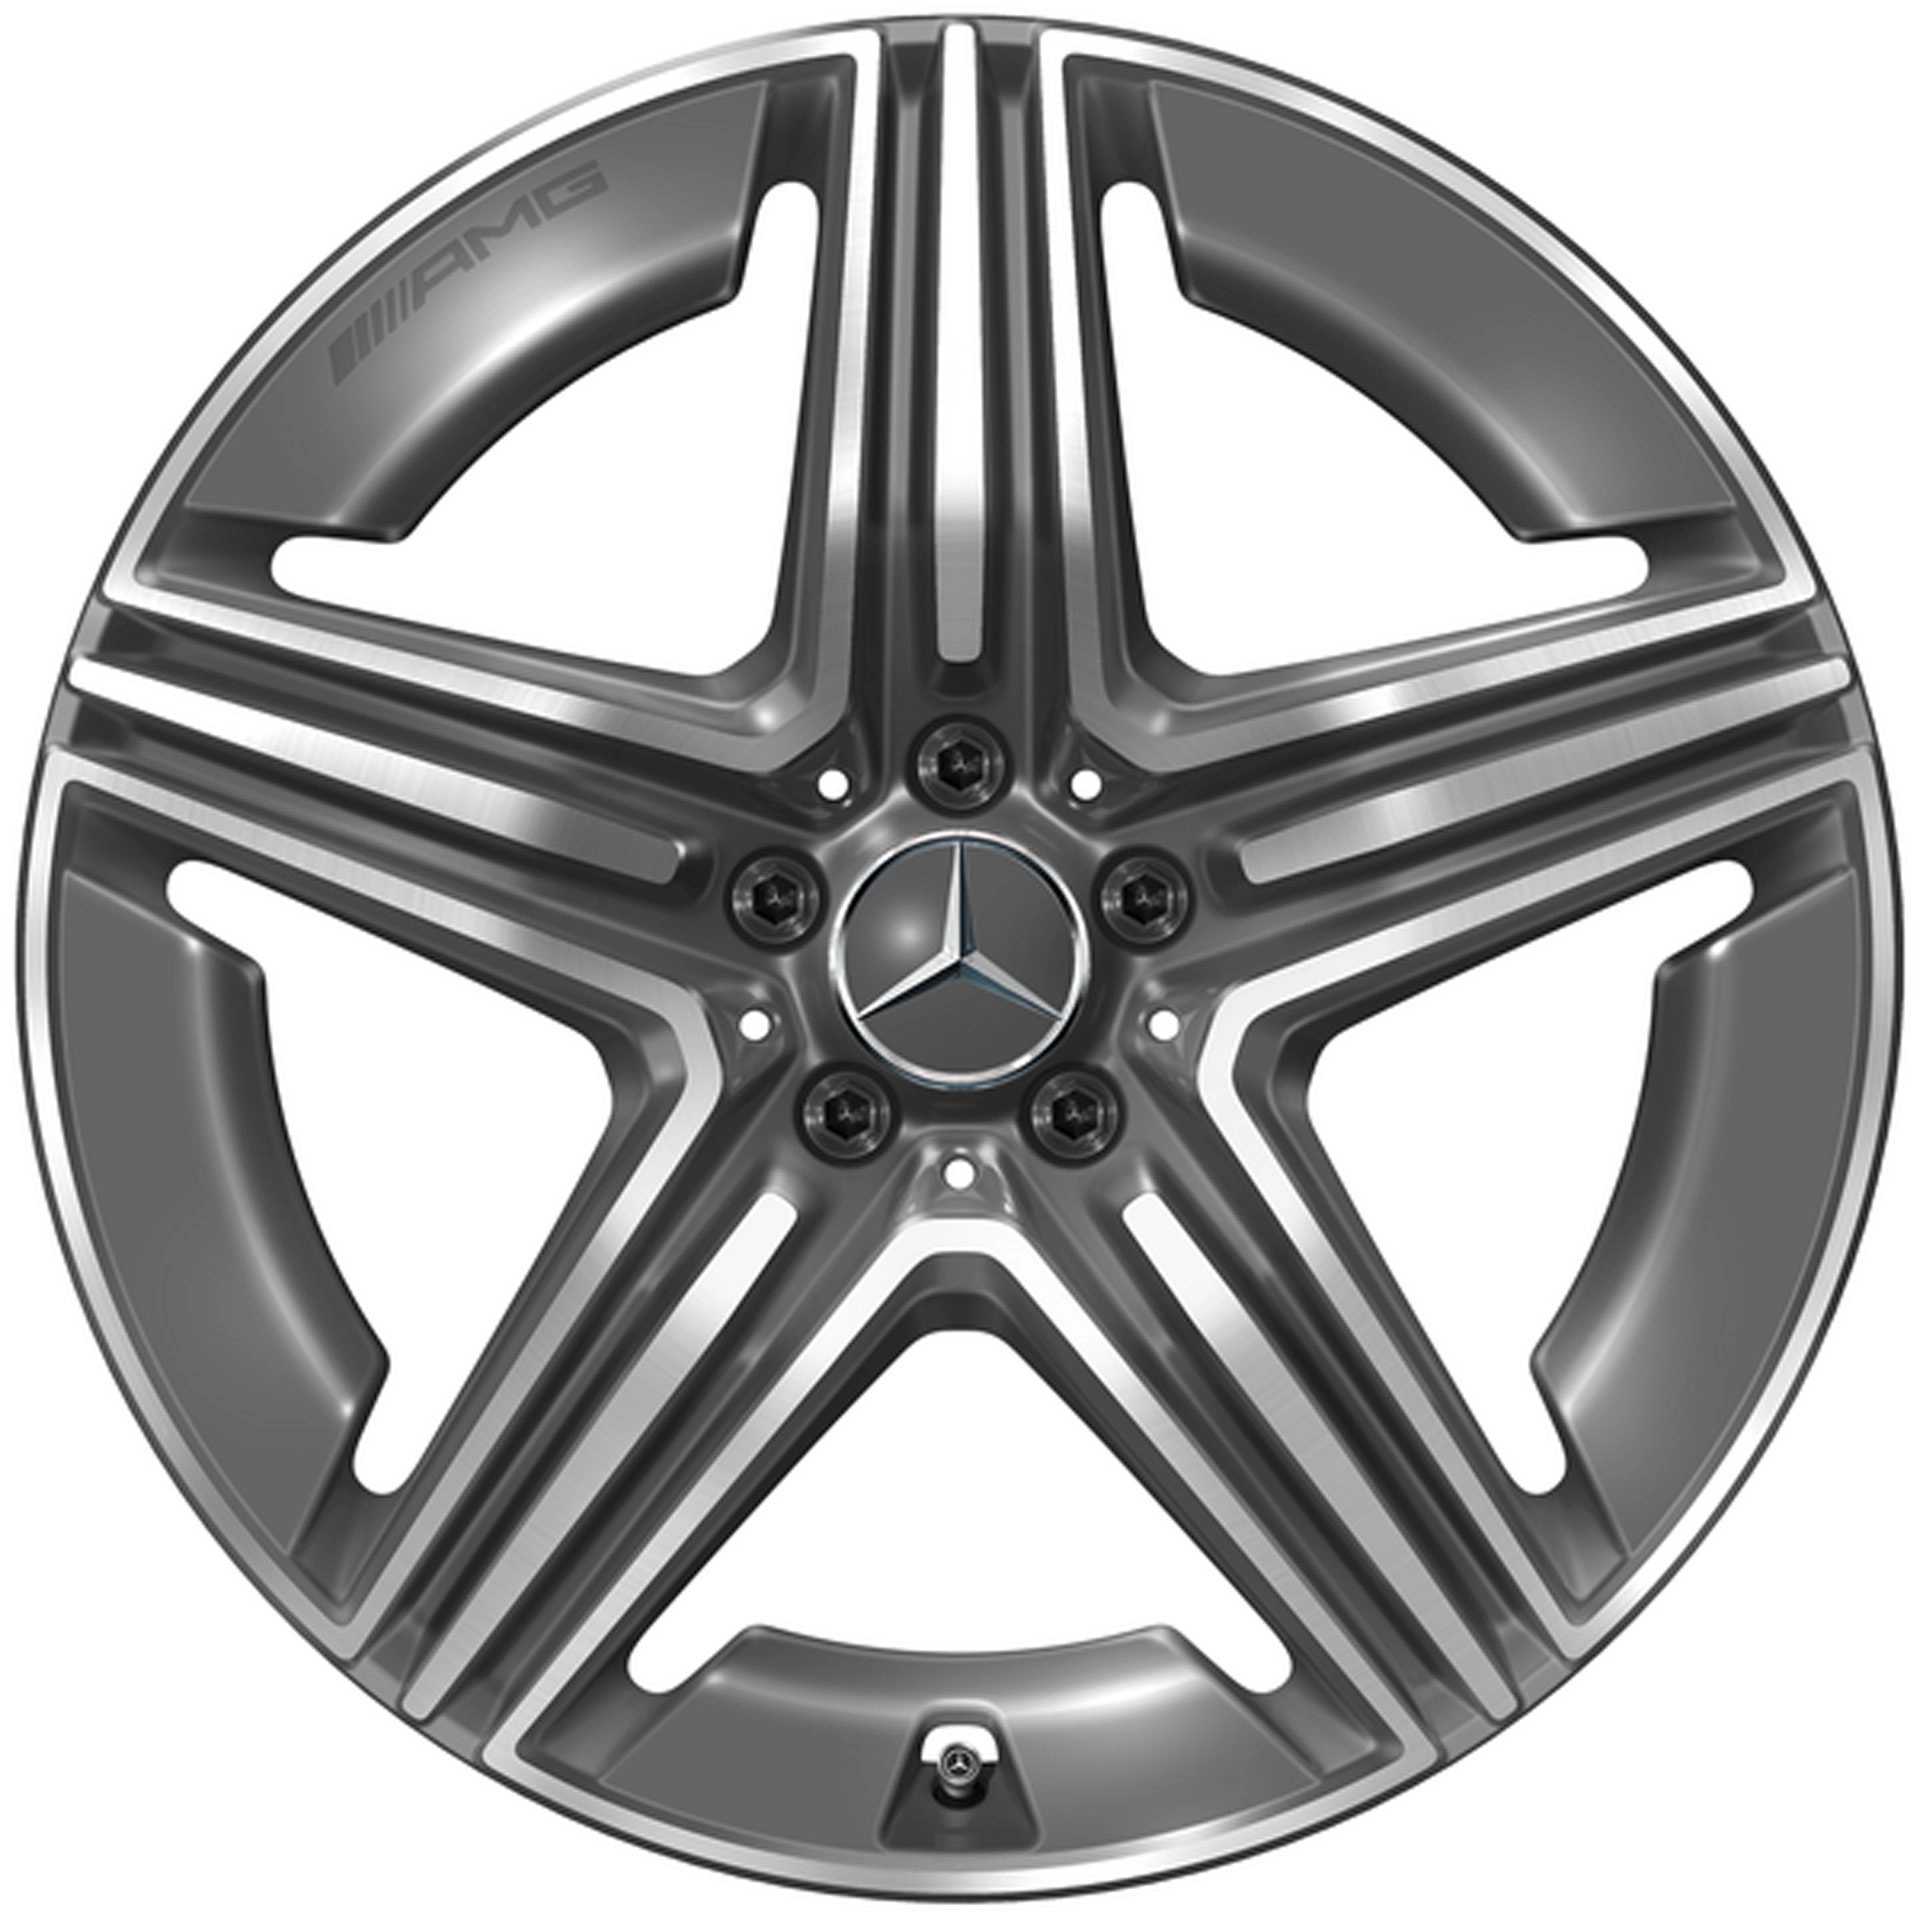 Mercedes-AMG 5-Doppelspeichen-Rad 20 Zoll Leichtmetallfelge GLC X254 grau glanzgedreht A25440106007Y51